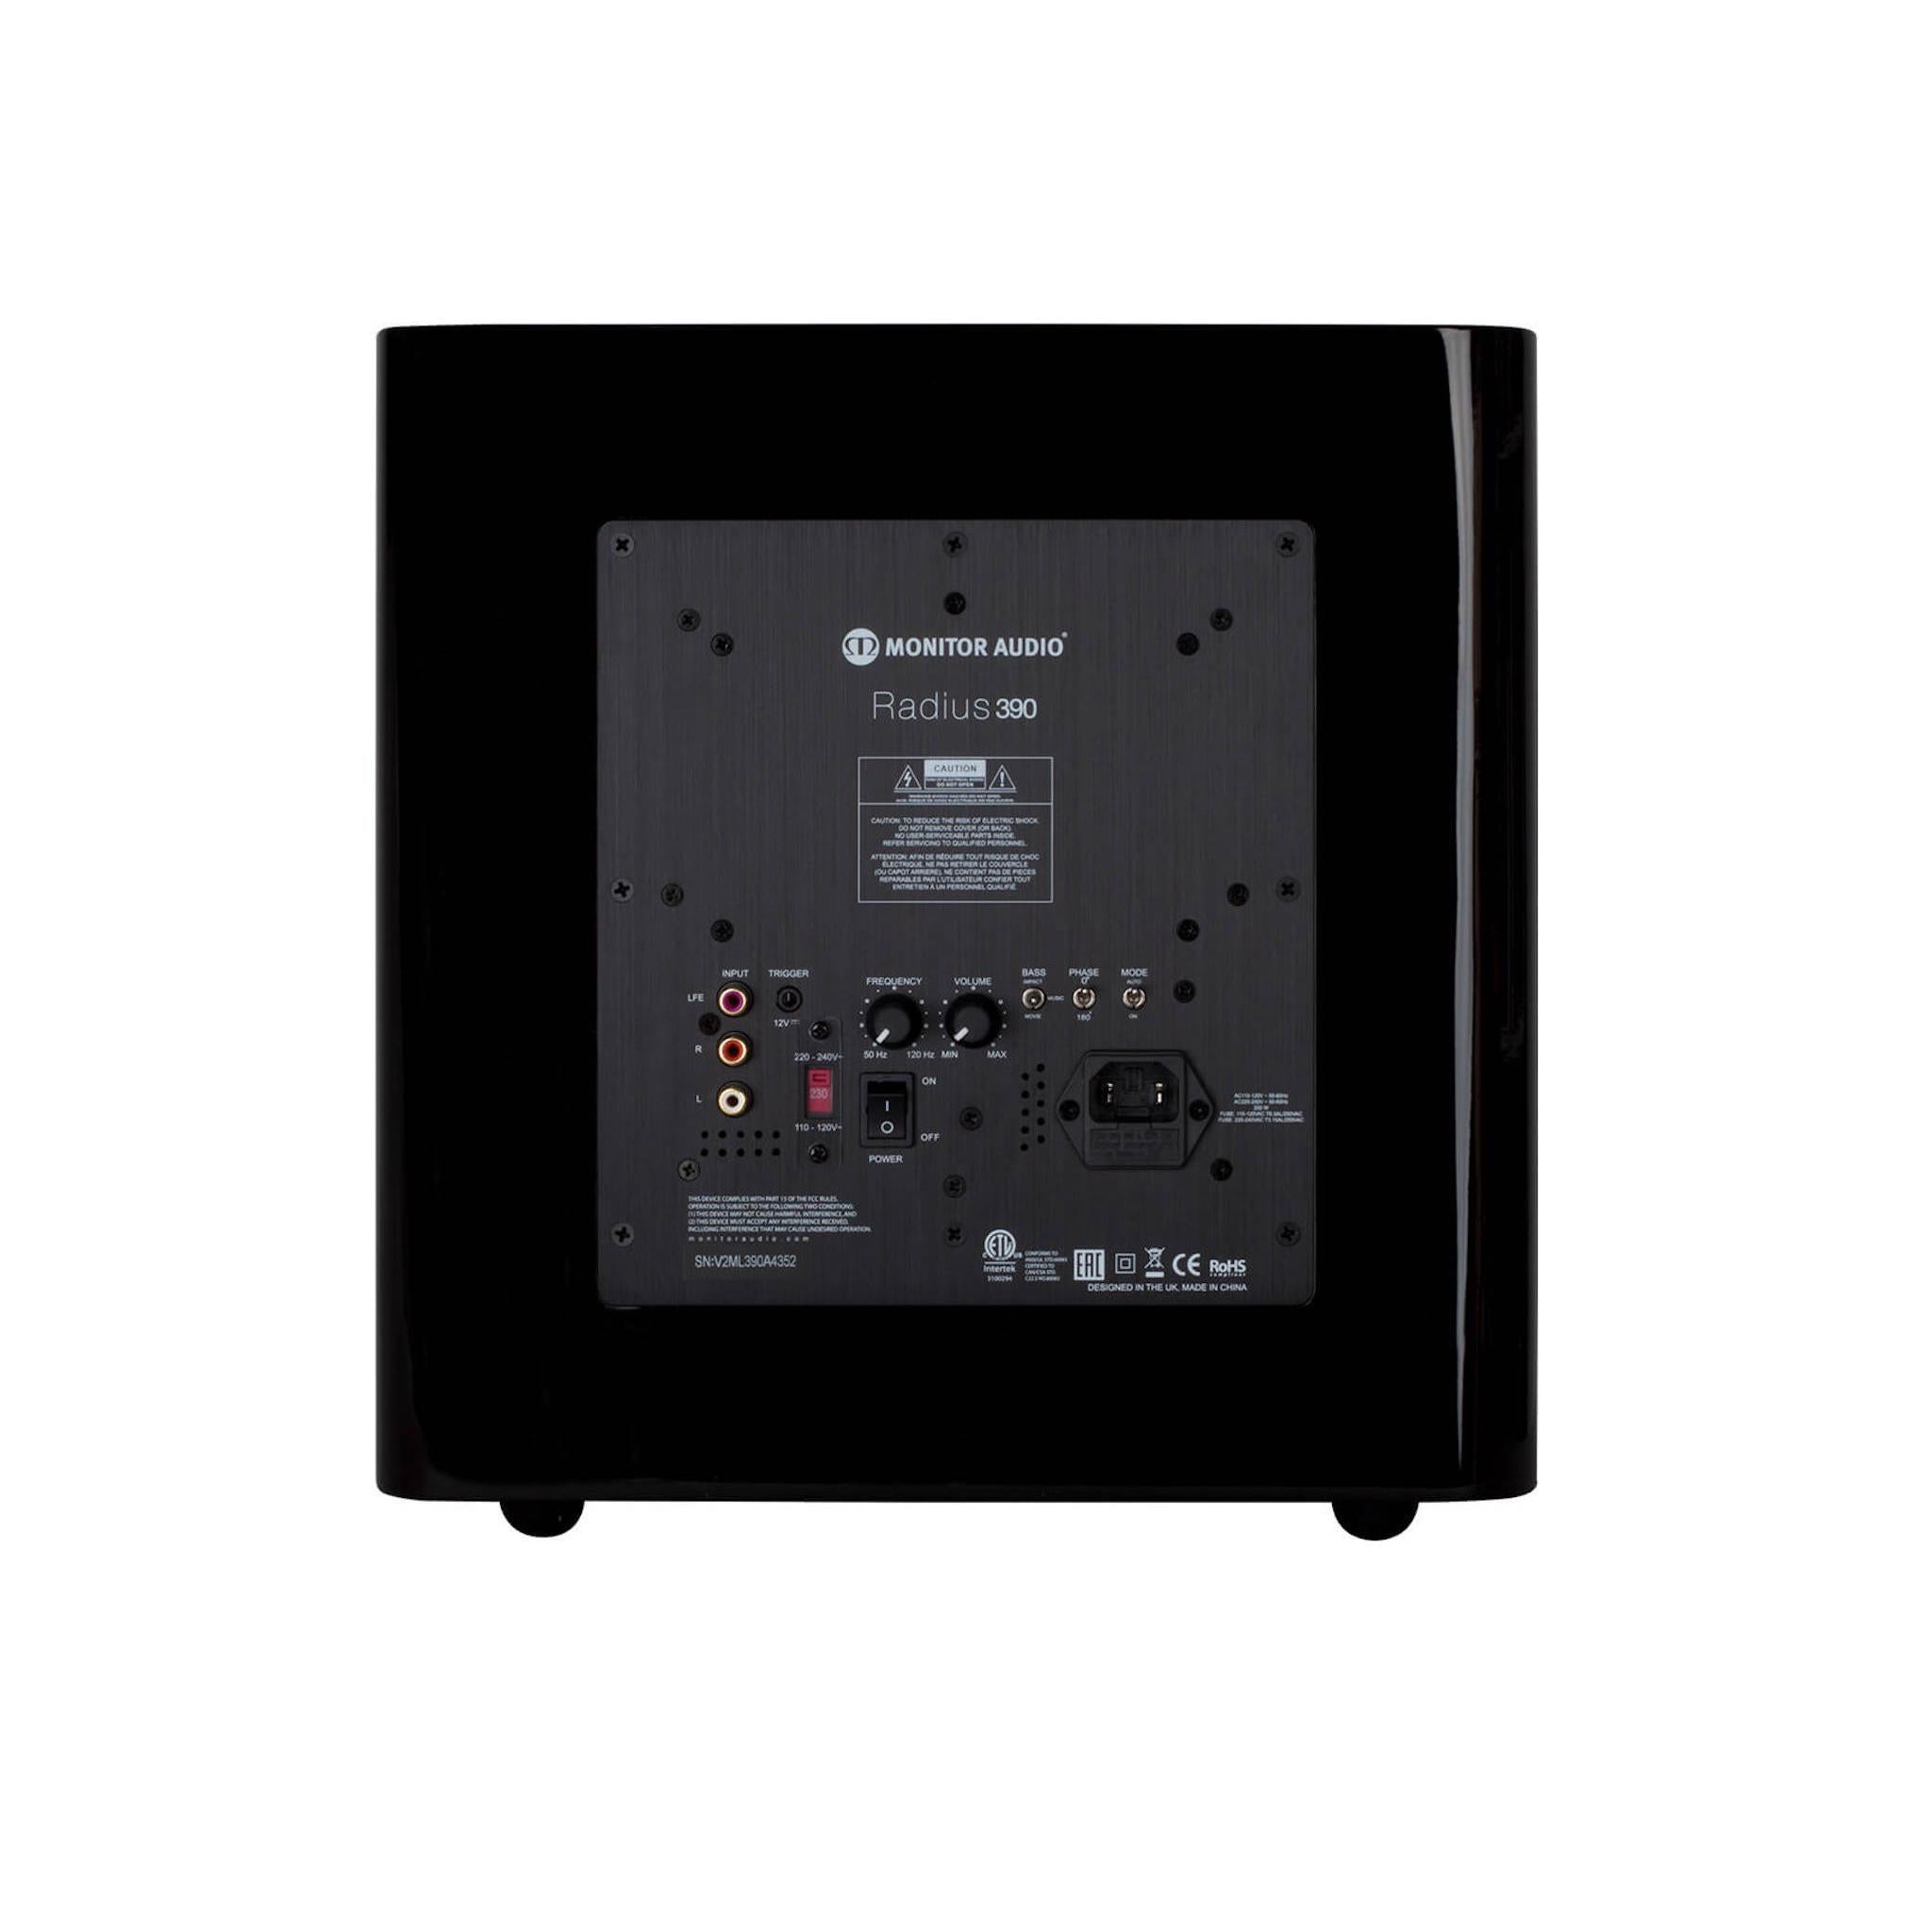 Monitor Audio Radius 390 - 10